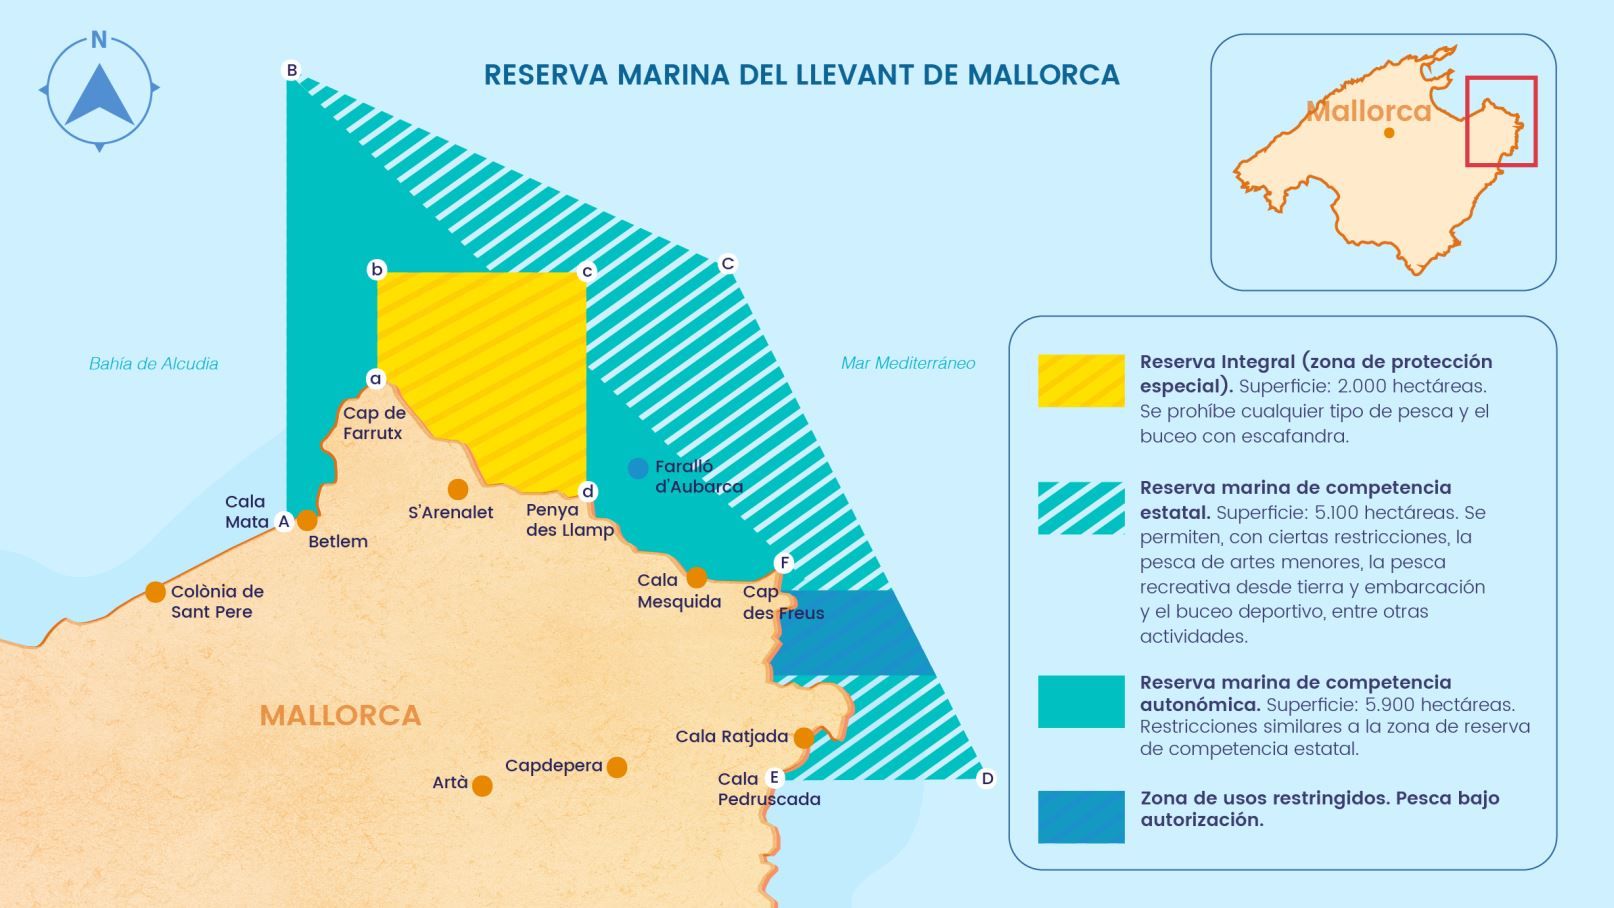 Zonaje de la Reserva Marina del Llevant de Mallorca / Imagen: Elaboración propia a partir de datos del Gobierno de las Islas Baleares y del Ministerio de Agricultura, Pesca y Alimentación